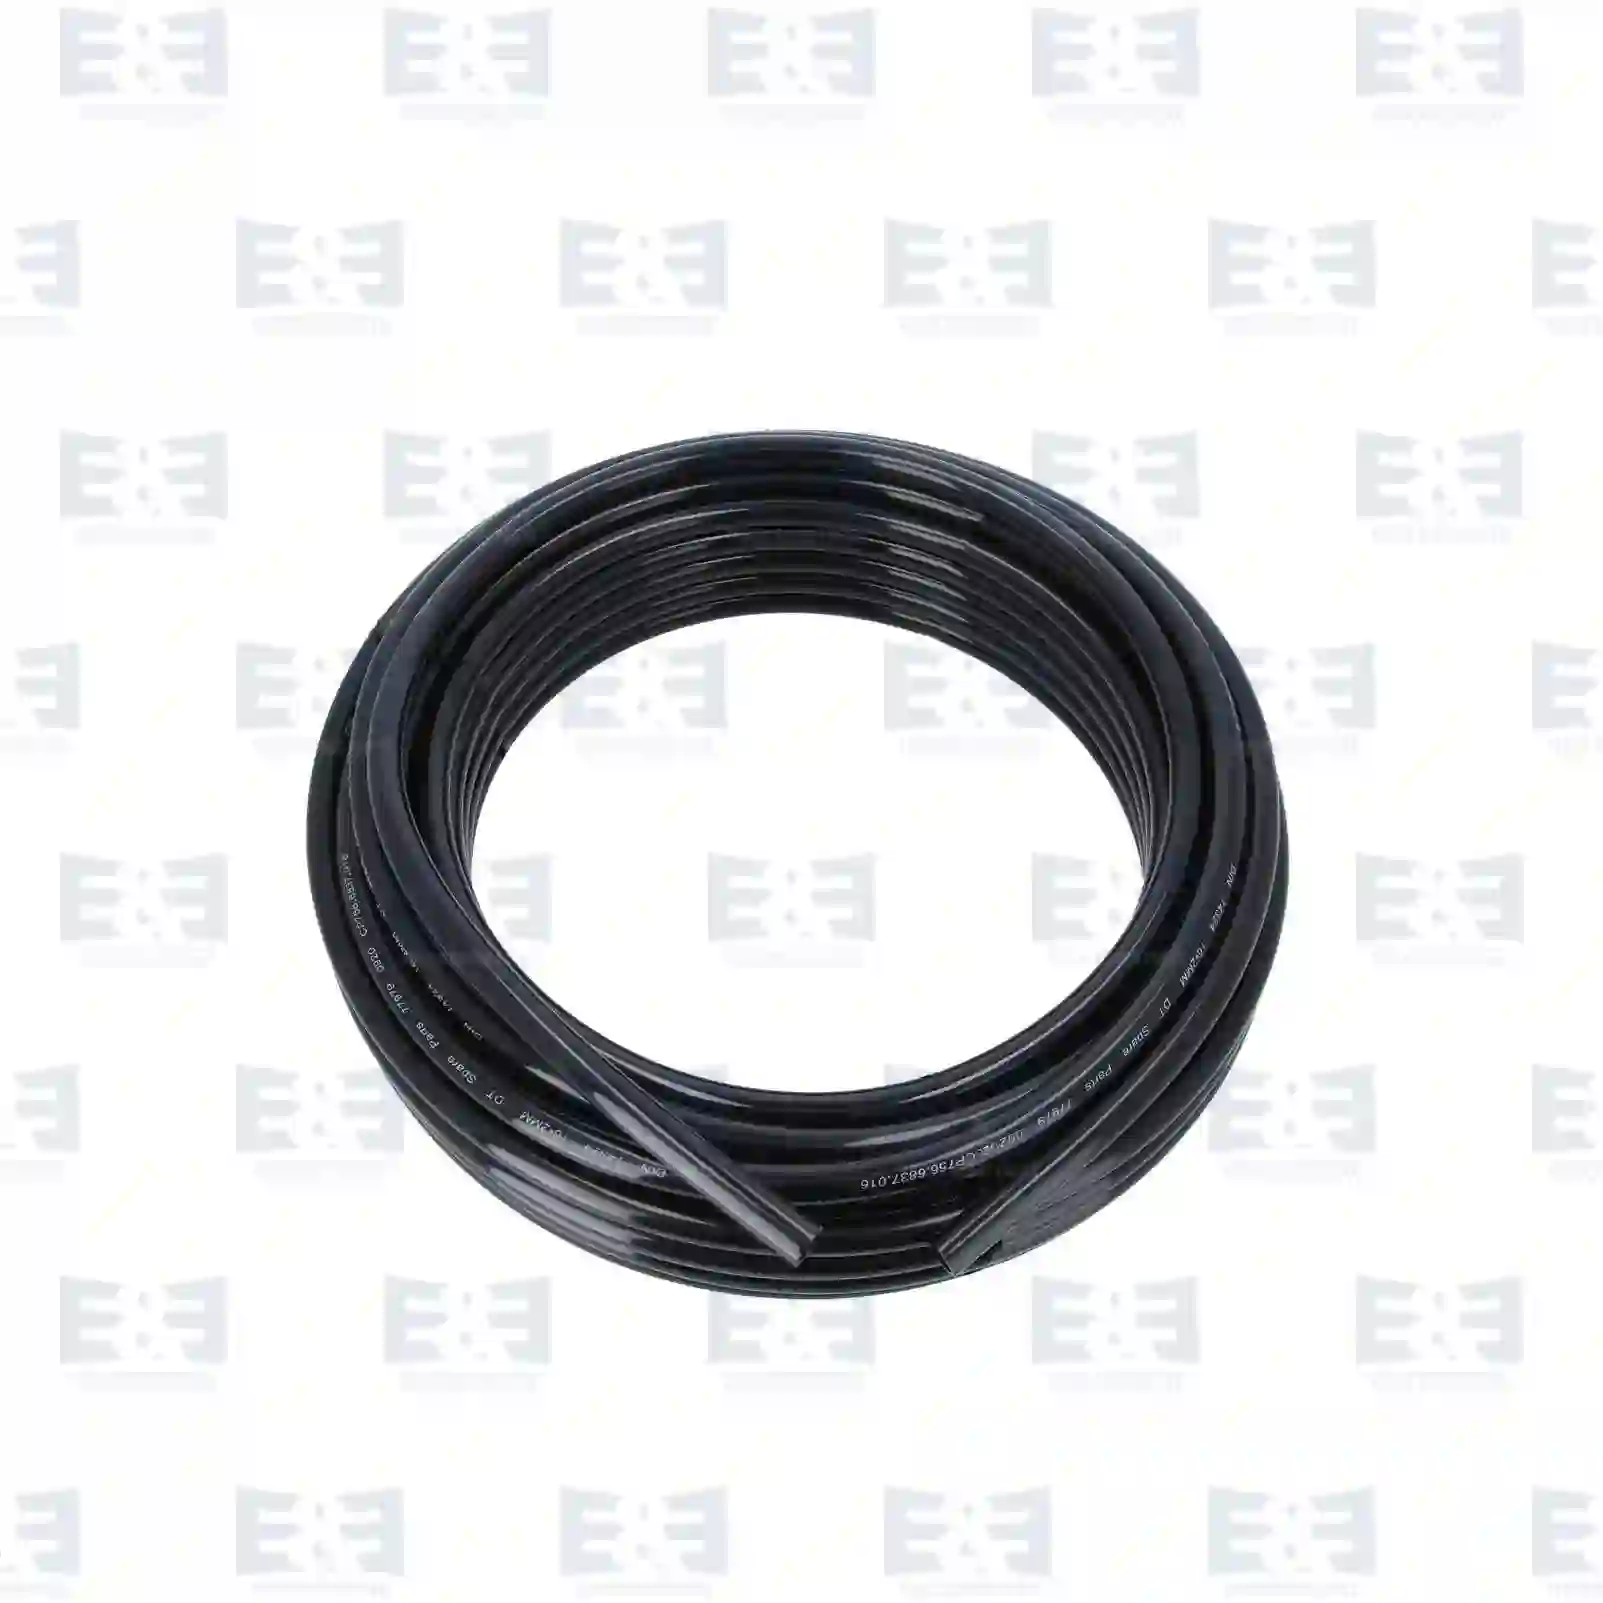  Nylon pipe, black || E&E Truck Spare Parts | Truck Spare Parts, Auotomotive Spare Parts